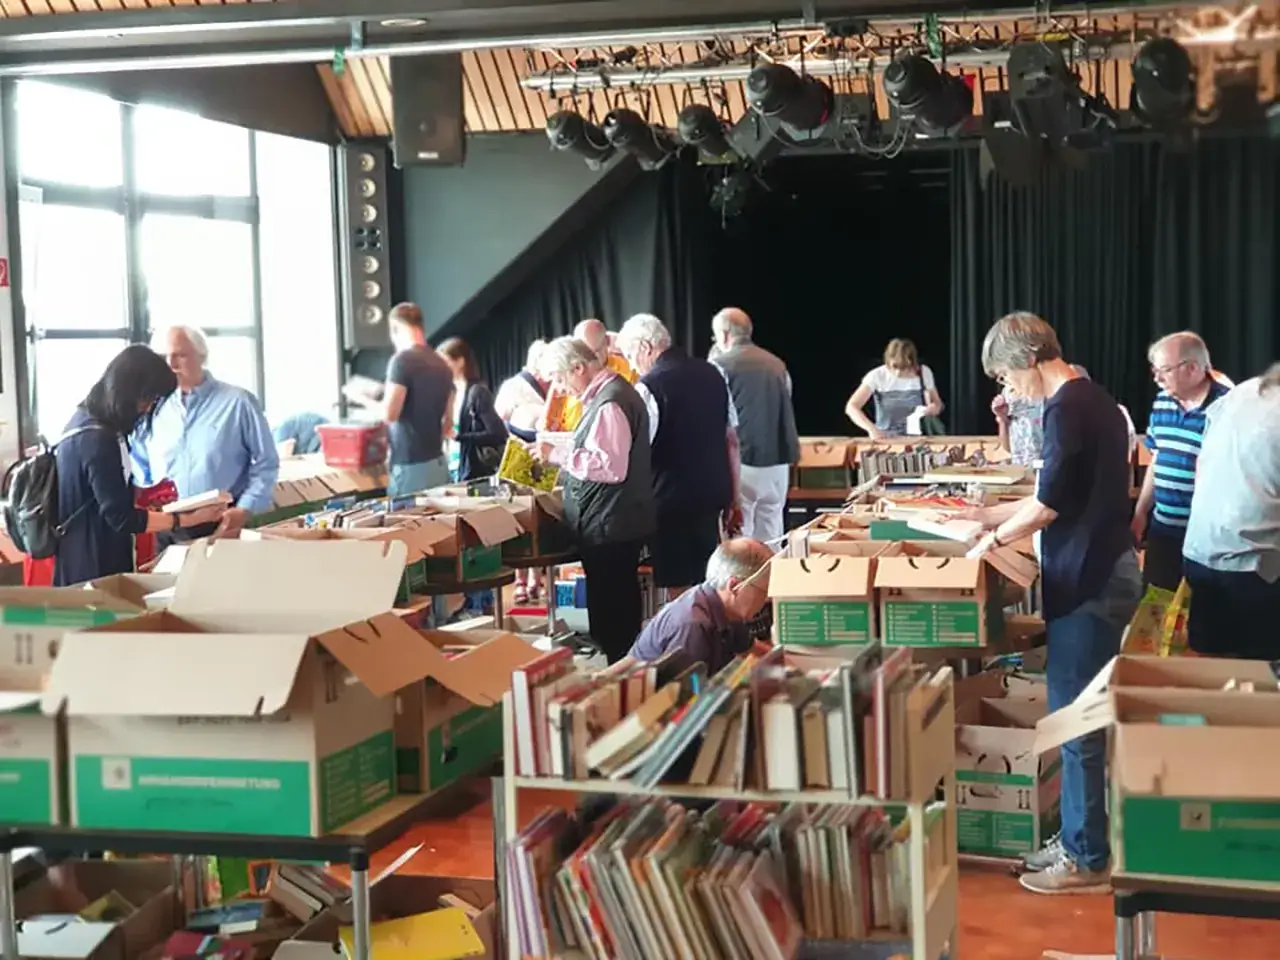 Kiloverkauf - Büchermarkt 2019 im Dachstudio - Bild 2 von 2